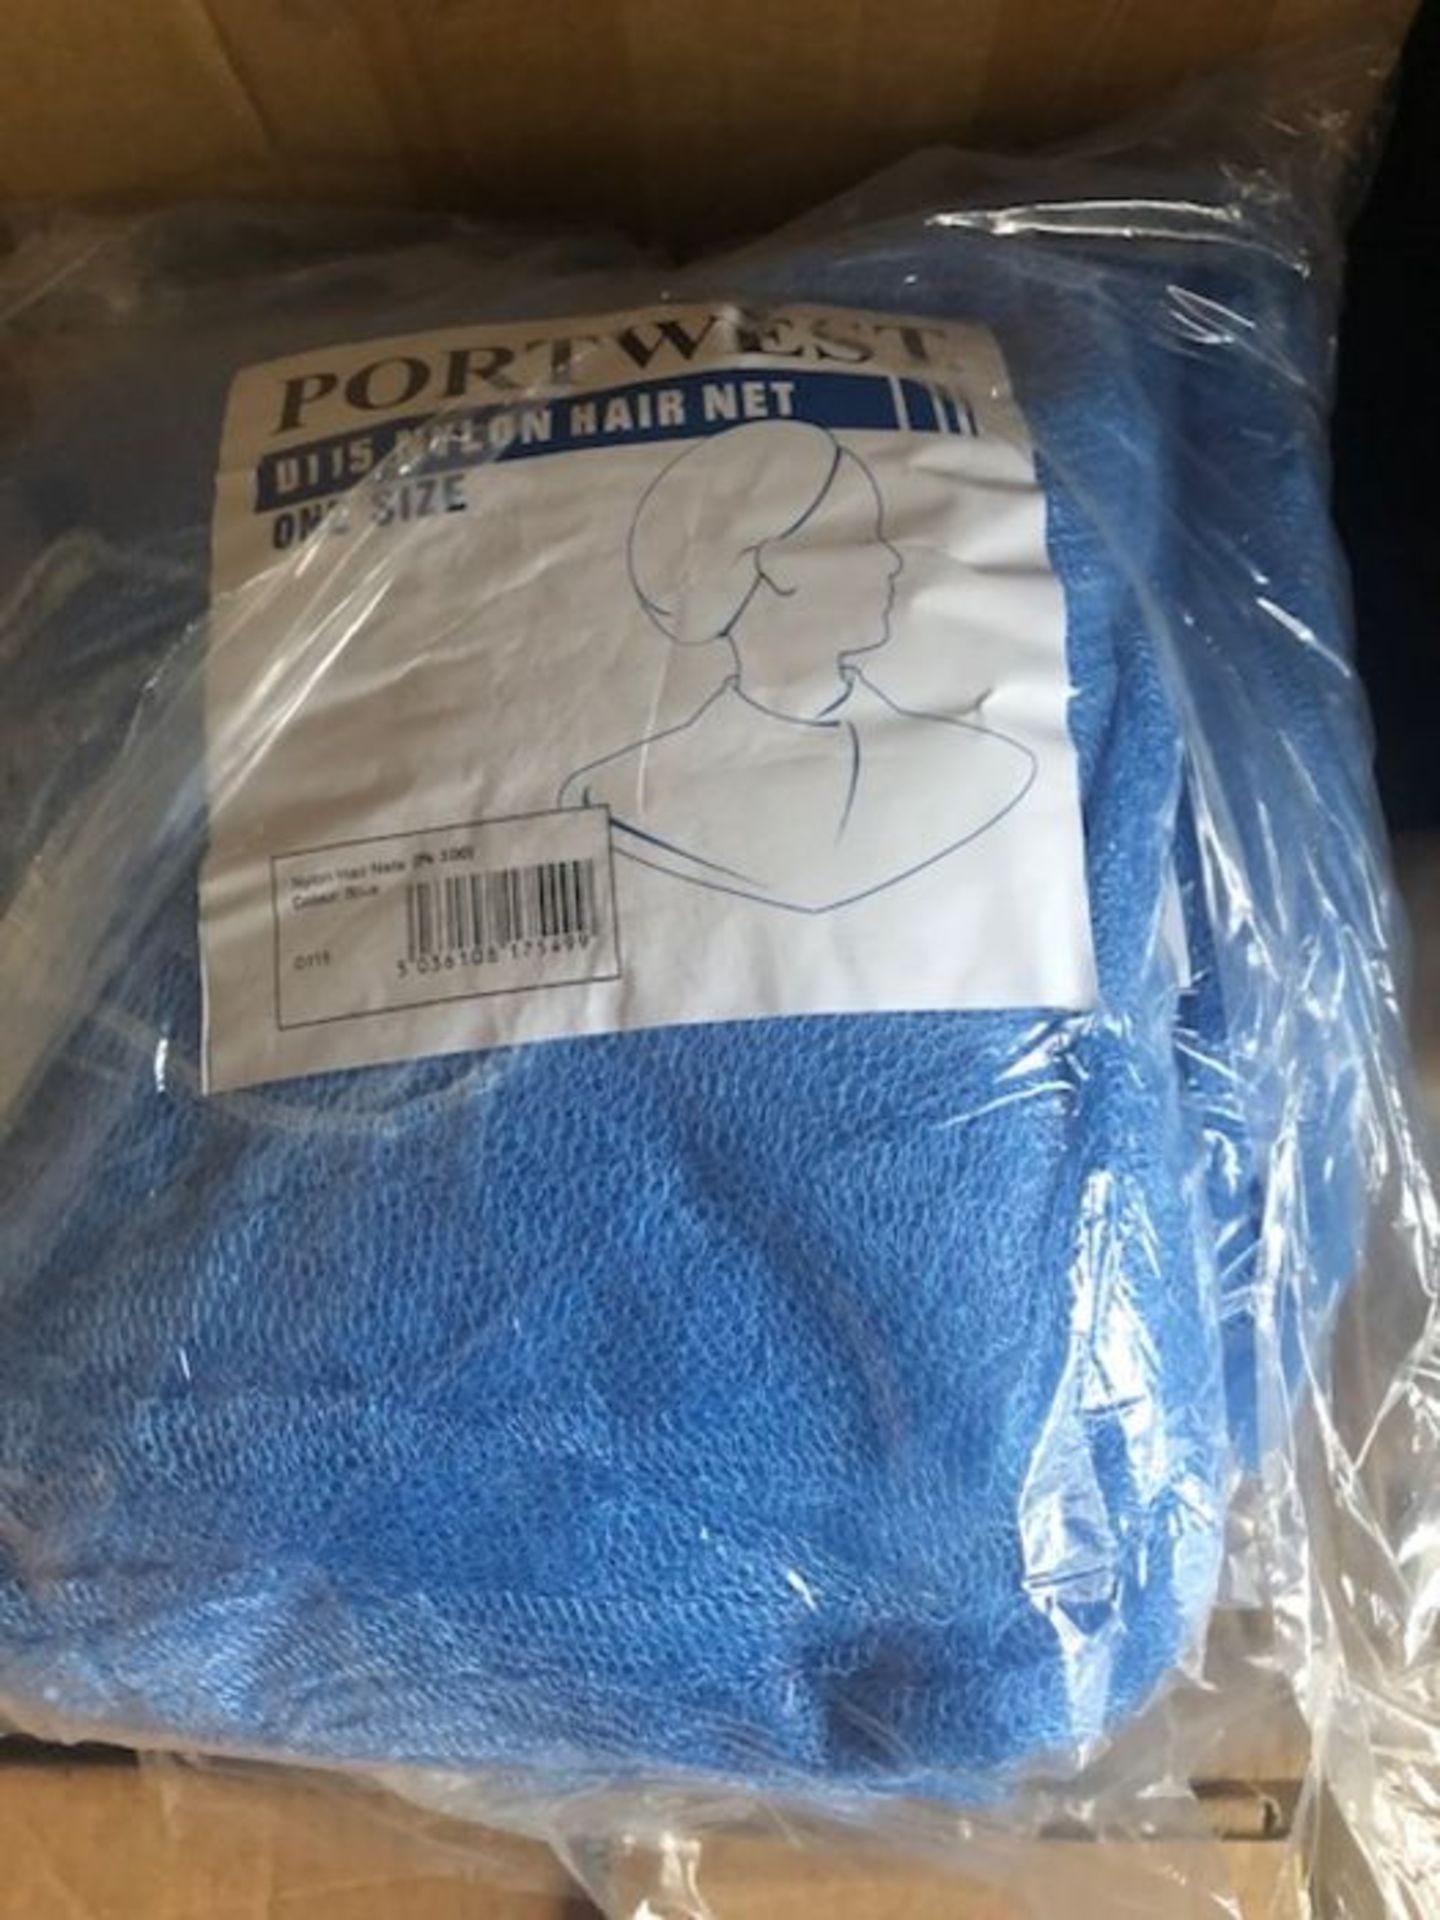 Box of 10,000 x Portwest D115 Nylon Disposable Hairnet - H9R 2000150939 - Bild 2 aus 6